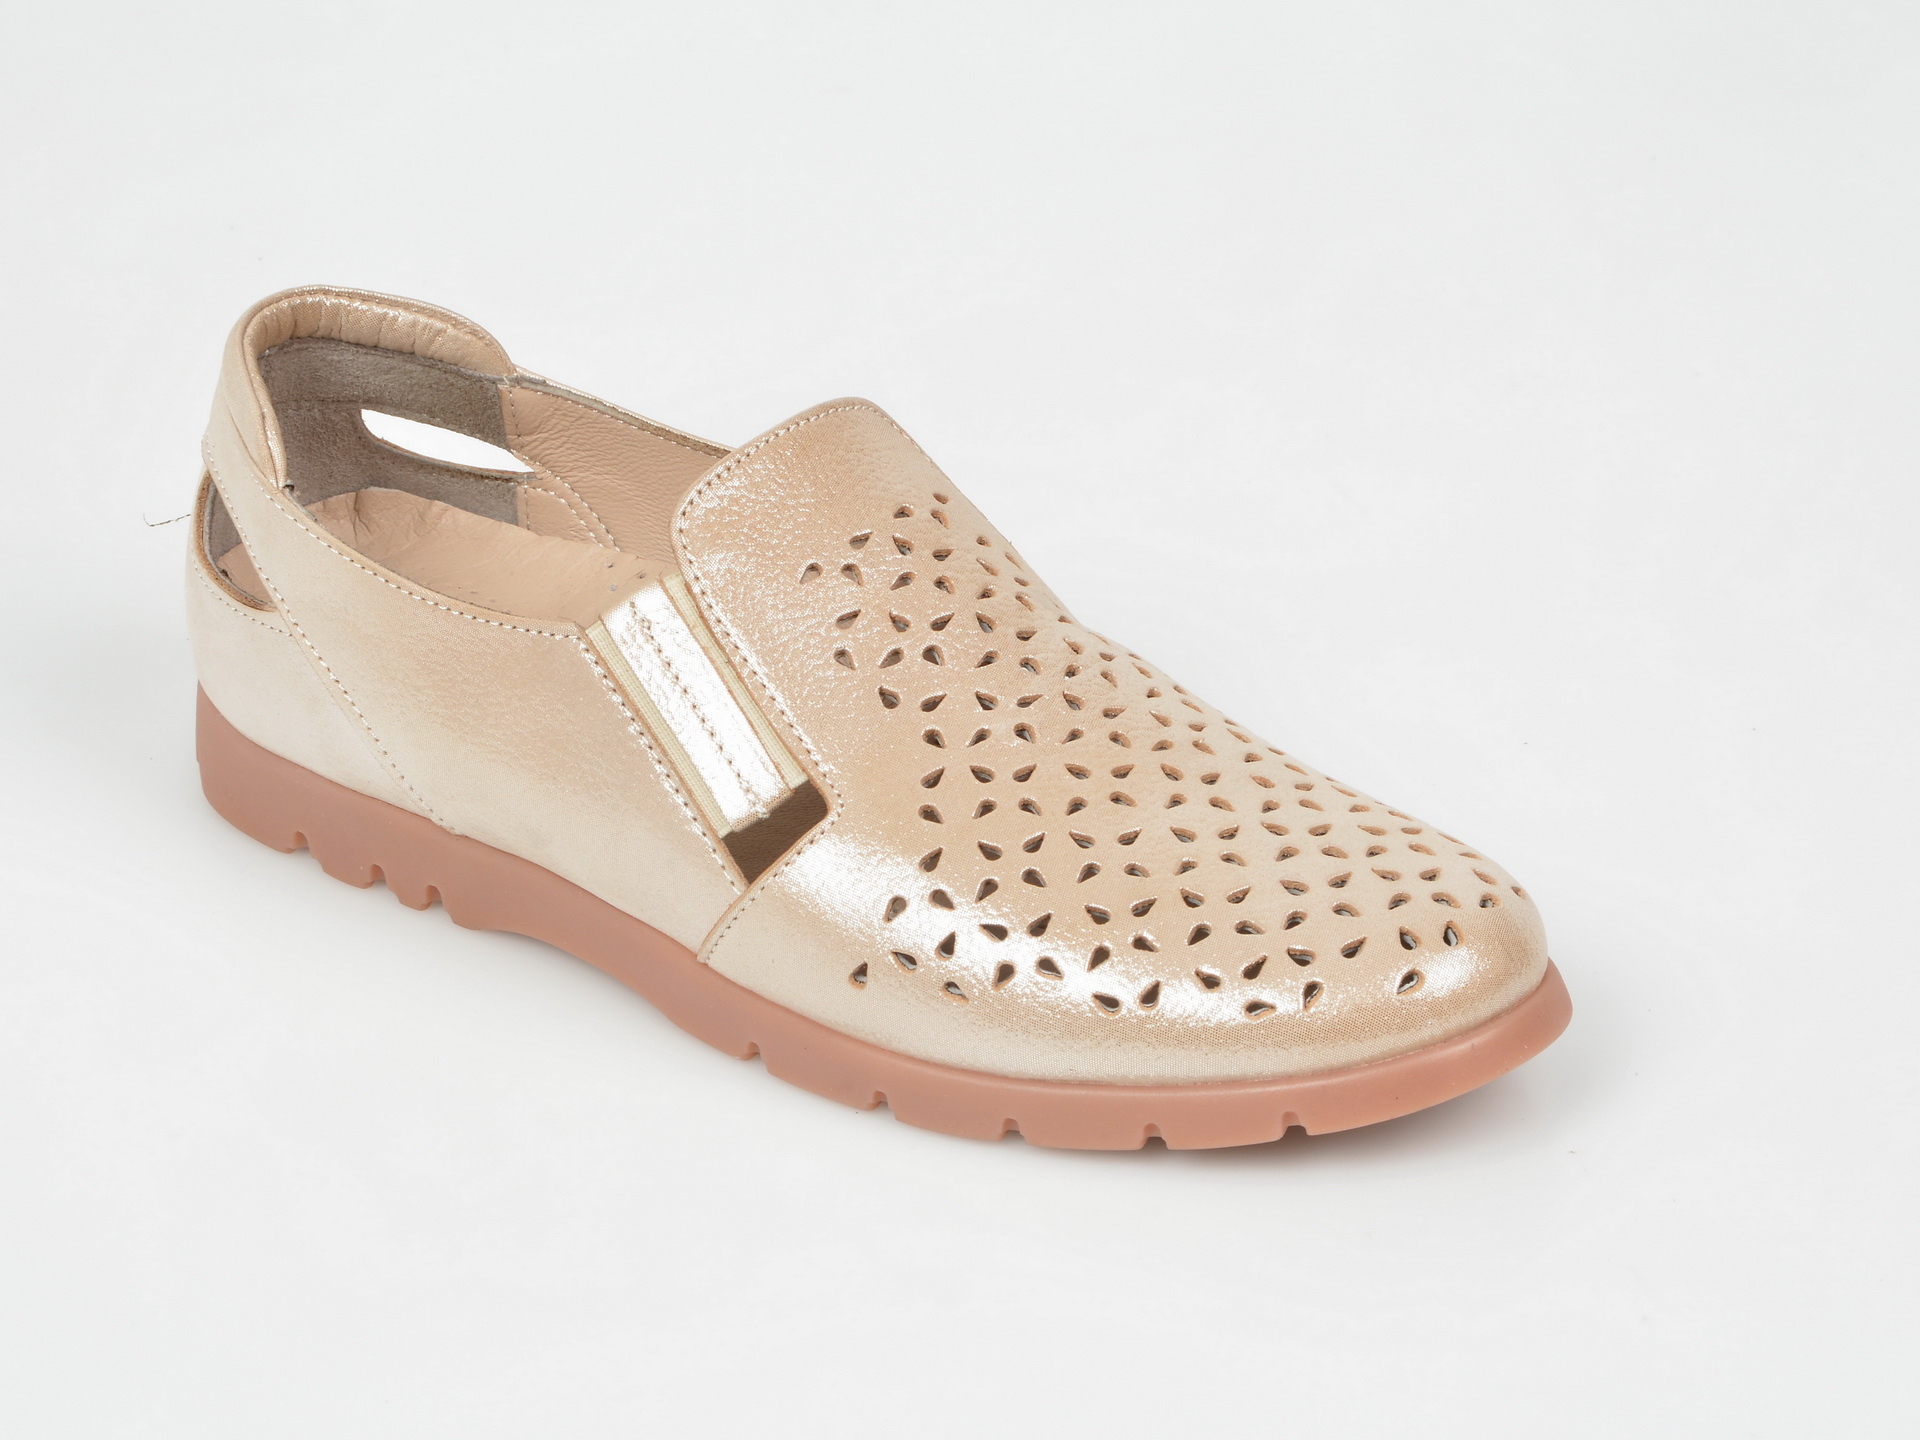 Pantofi FLAVIA PASSINI aurii, 14252, din piele naturala